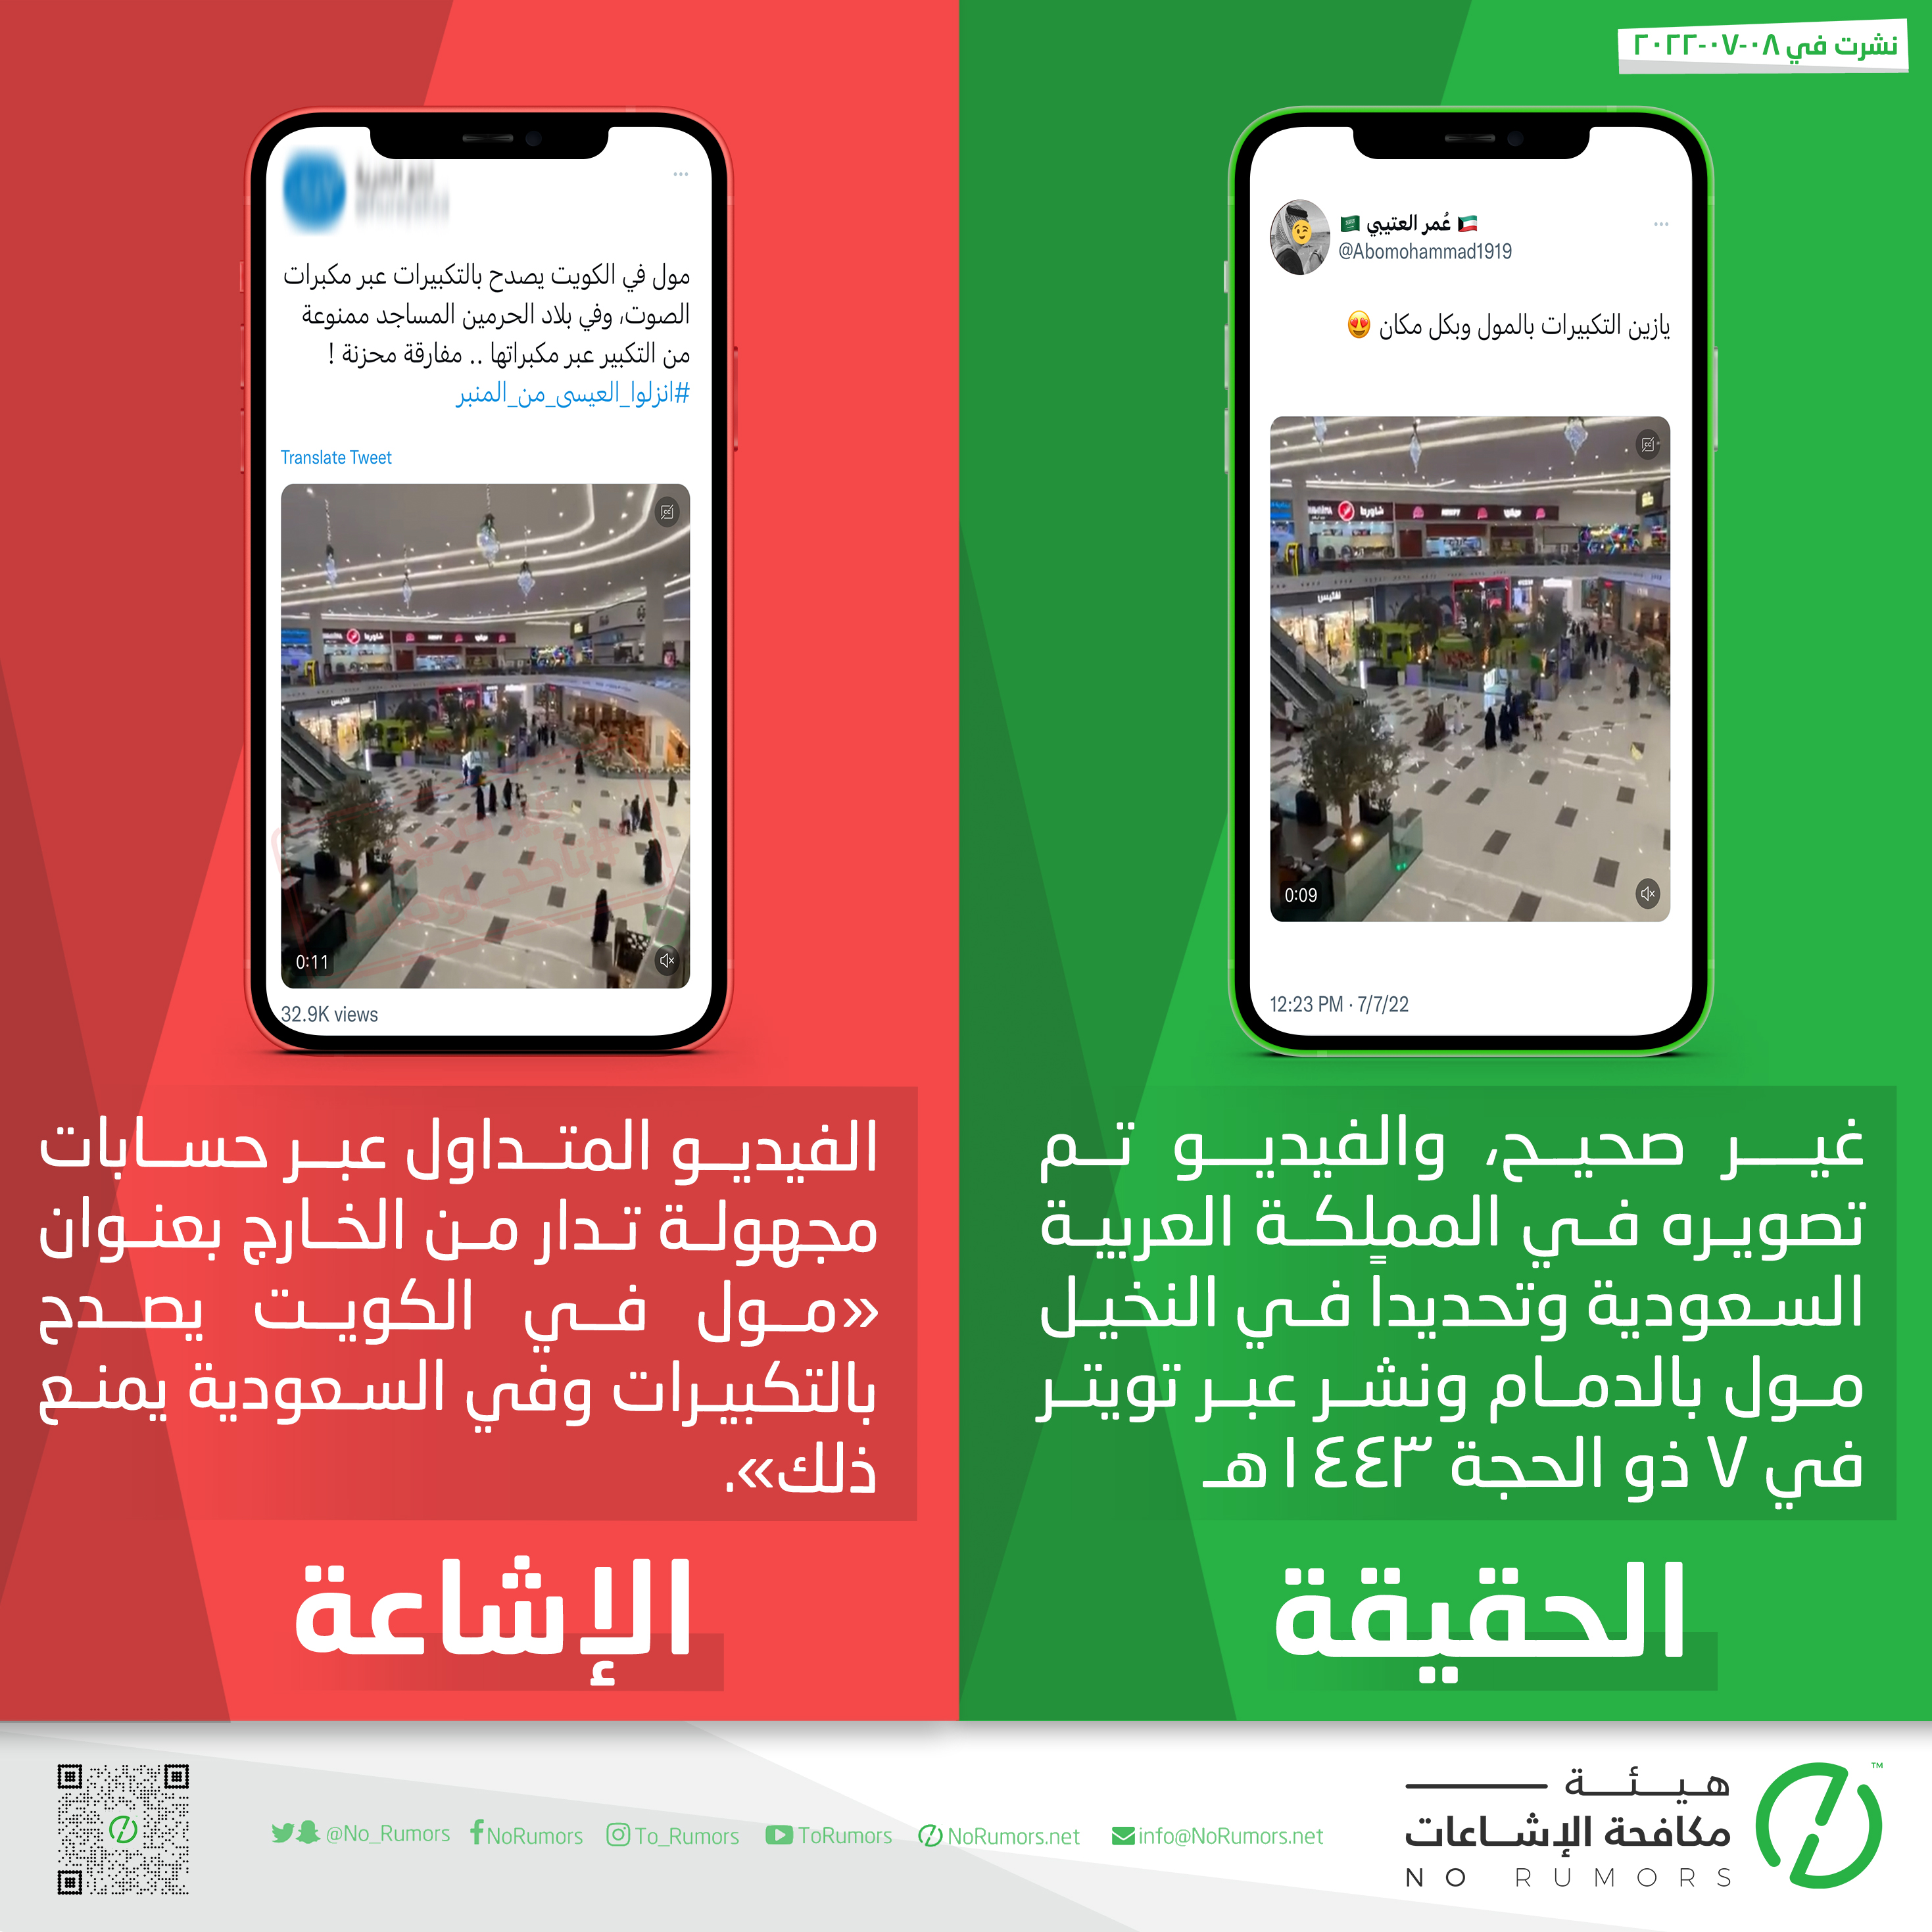 حقيقة الفيديو بعنوان «مول في الكويت يصدح بالتكبيرات وفي السعودية يمنع ذلك»